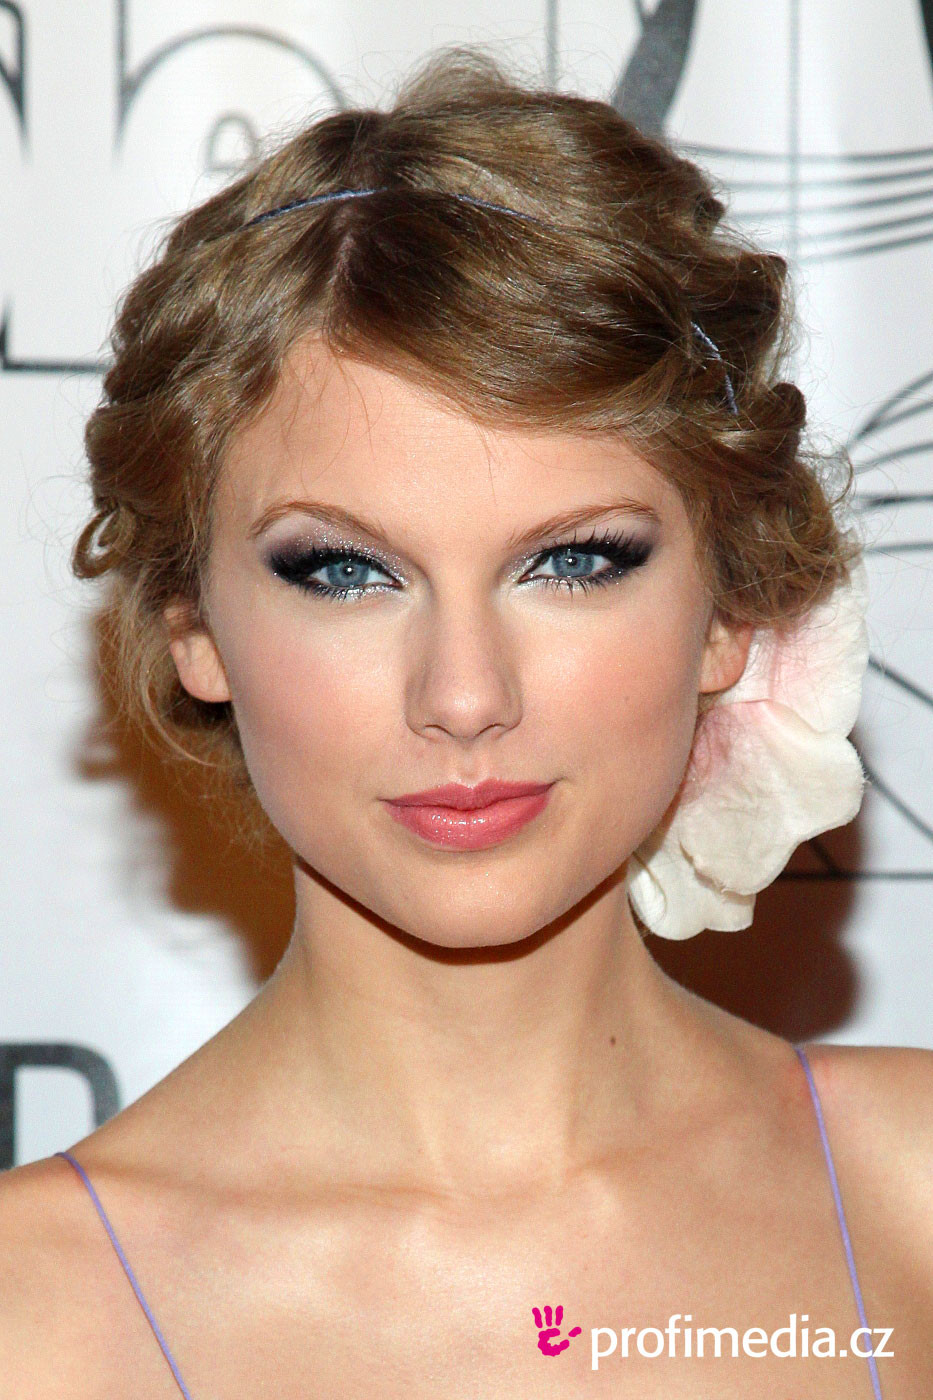 Frisuren Ausprobieren
 Taylor Swift frisur zum Ausprobieren in eFrisuren